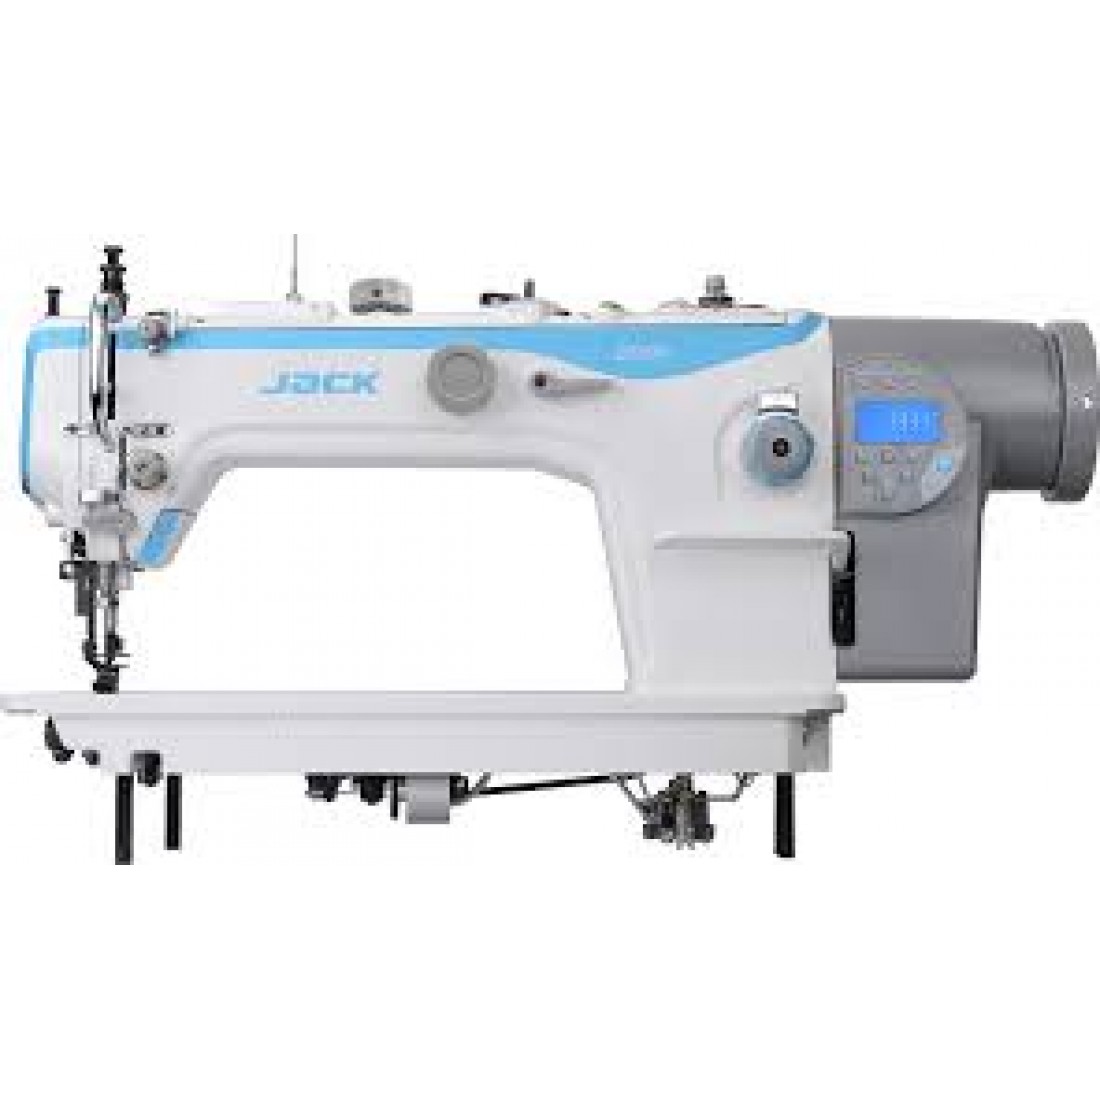 Промышленная швейная машина шагающая. Промышленная швейная машина Jack JK-2030ghc-4q. Jack JK-2060ghc-4q. Промышленная швейная машина Jack JK-2030ghc-4q(комплект). Швейная машина Jack 2060 4q.